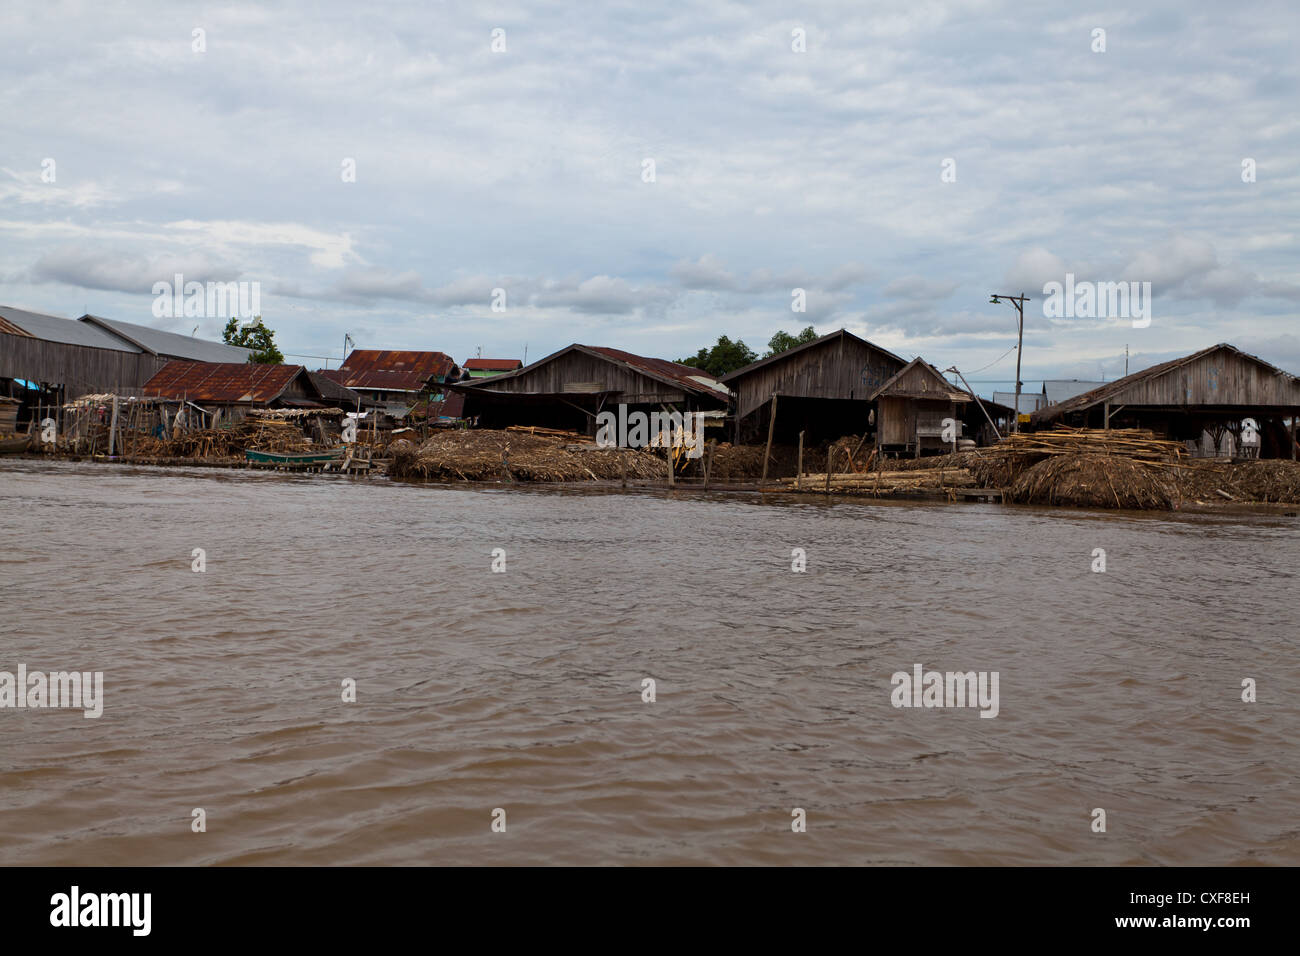 River Banks in Banjarmasin in Indonesia Stock Photo